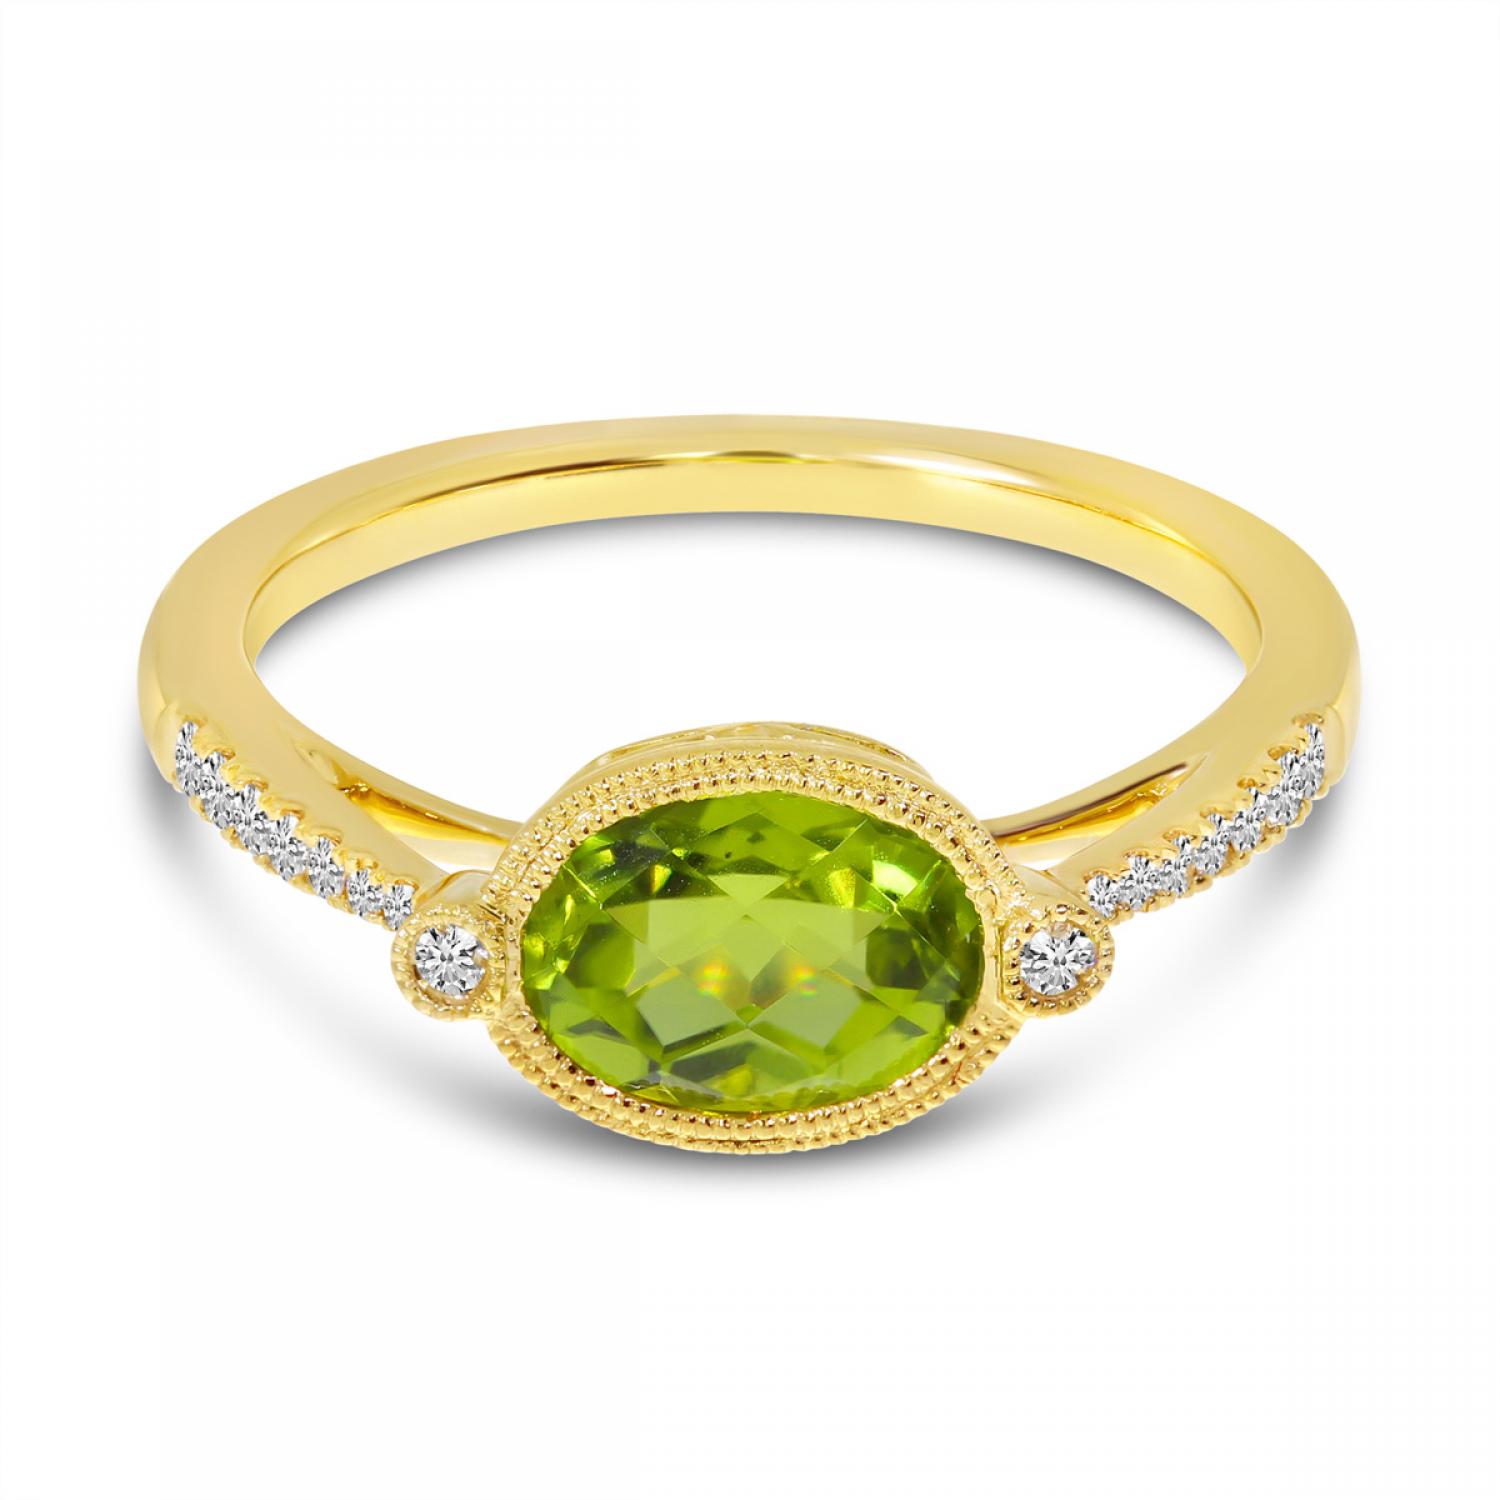 Peridot & Fancy Green Diamond Earrings 14K Yellow Gold